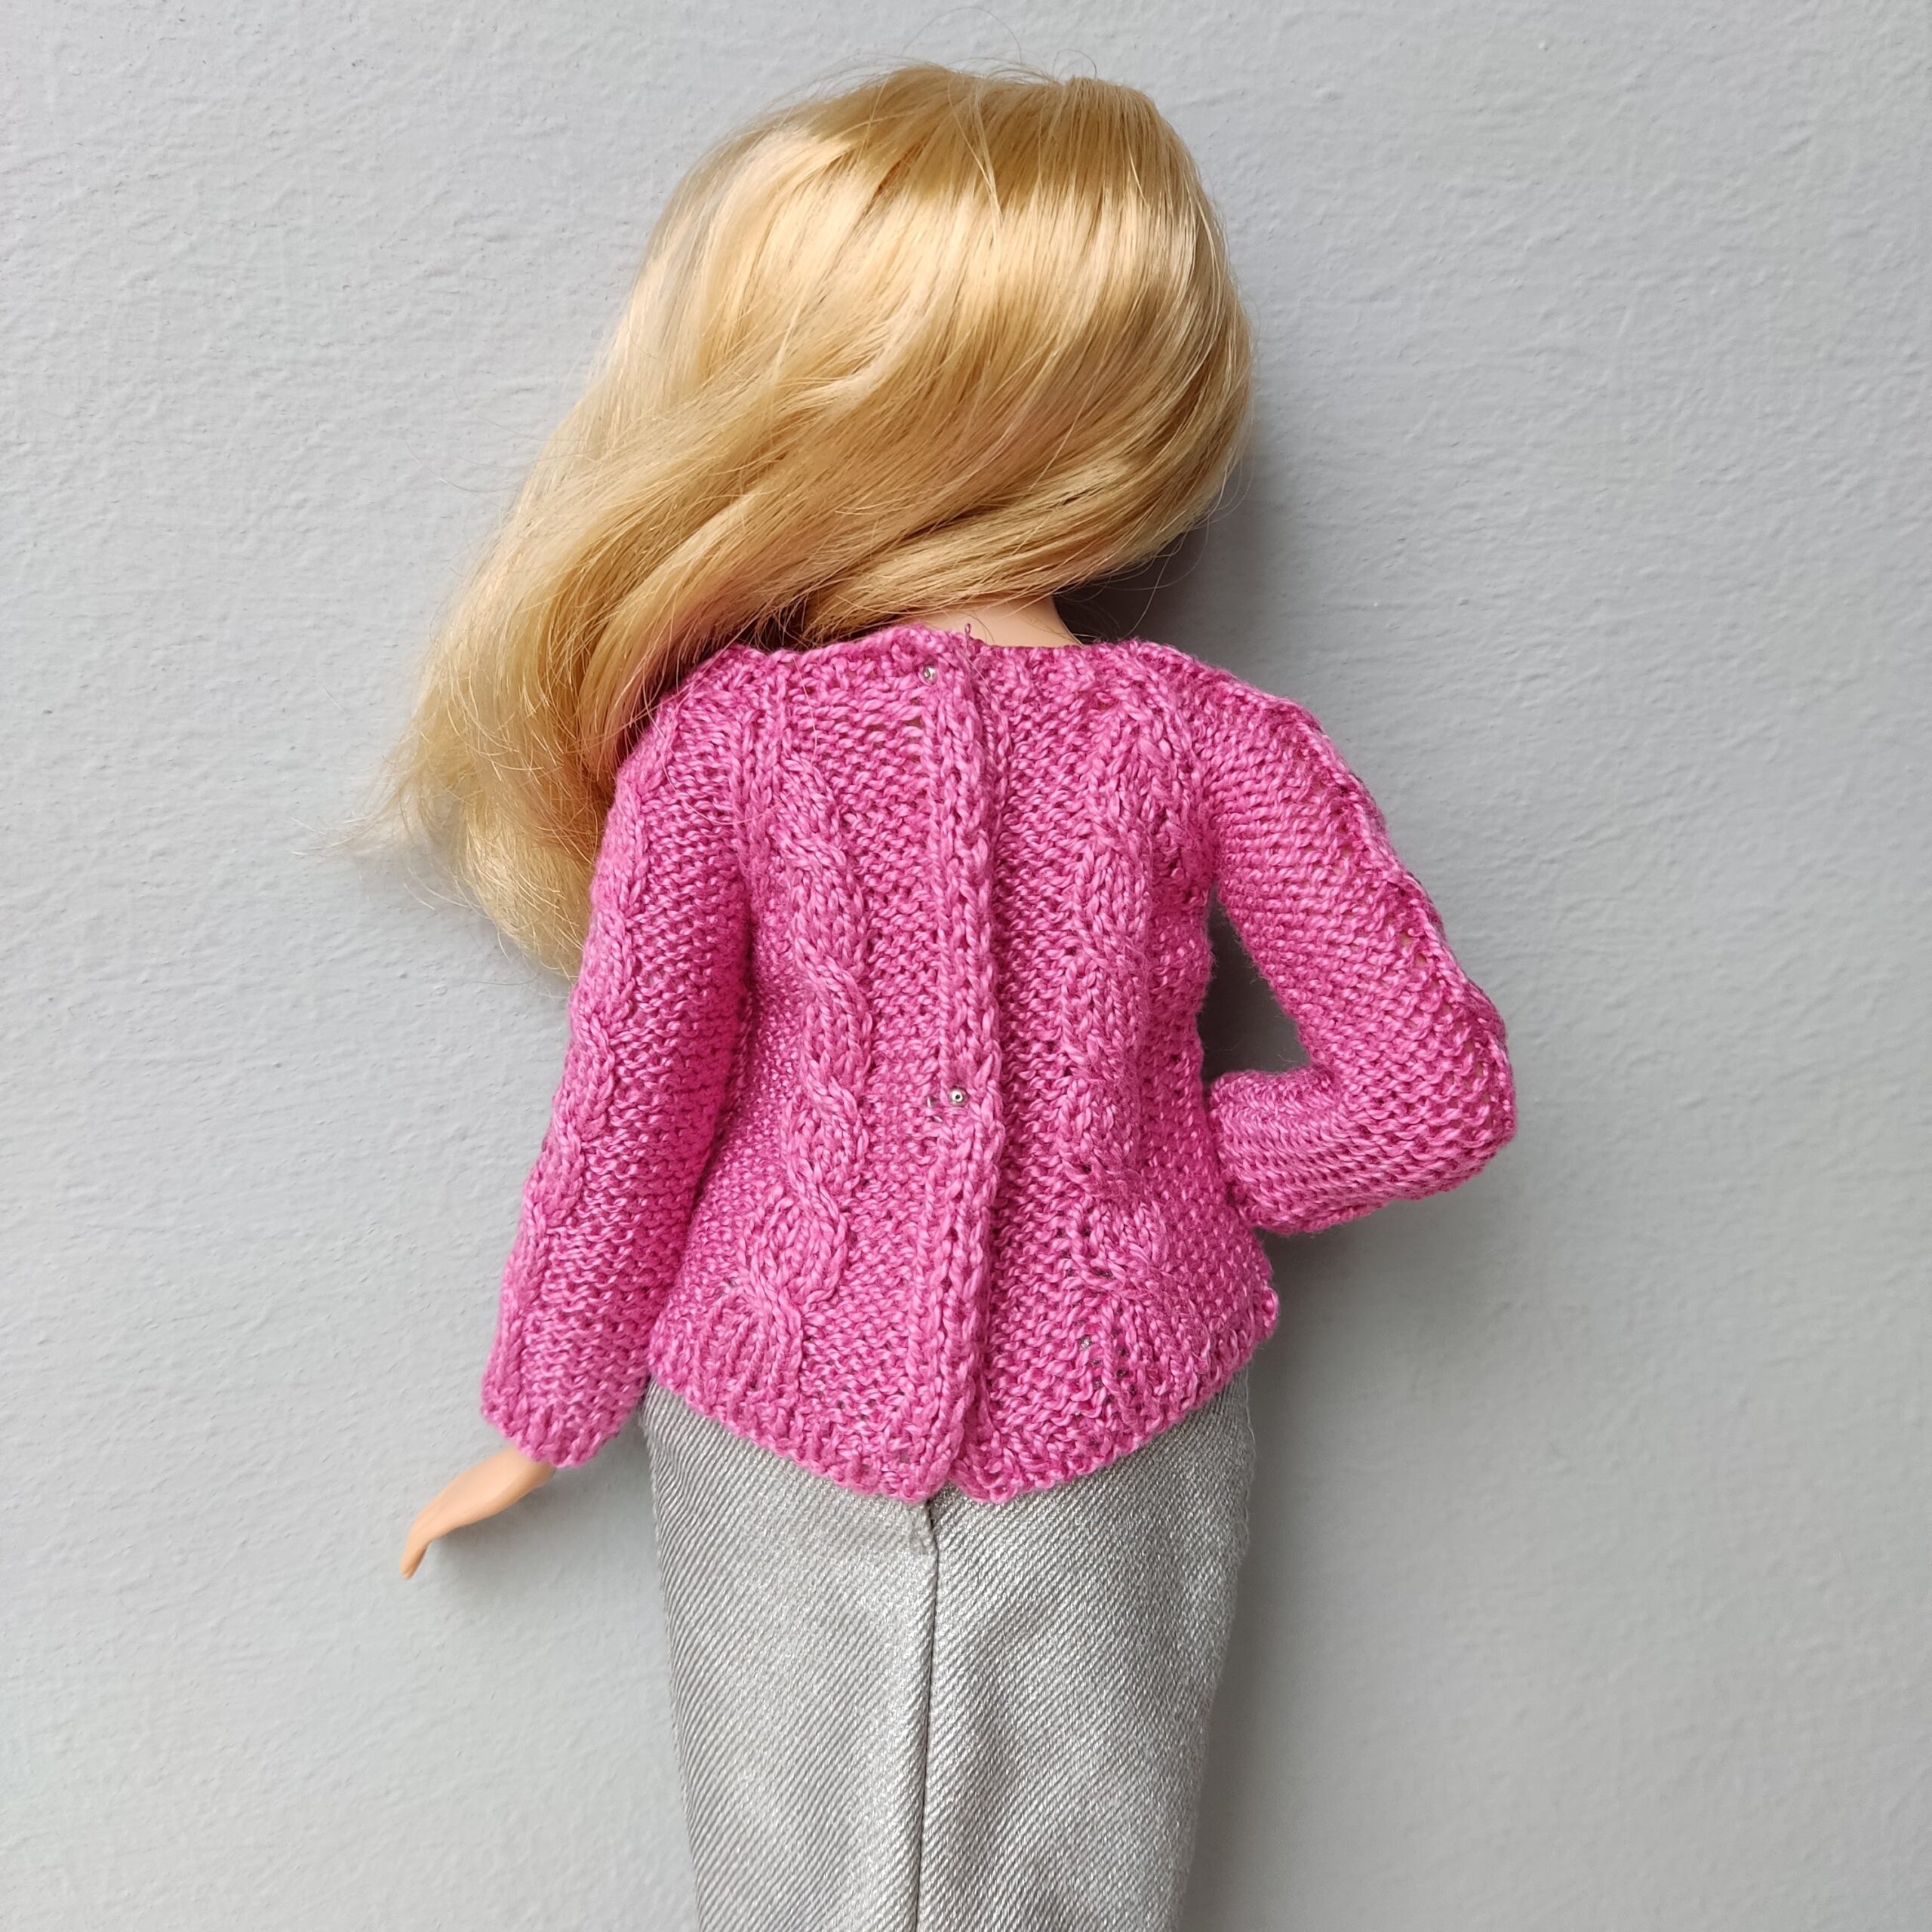 Barbie doll clothes by VikukuShop